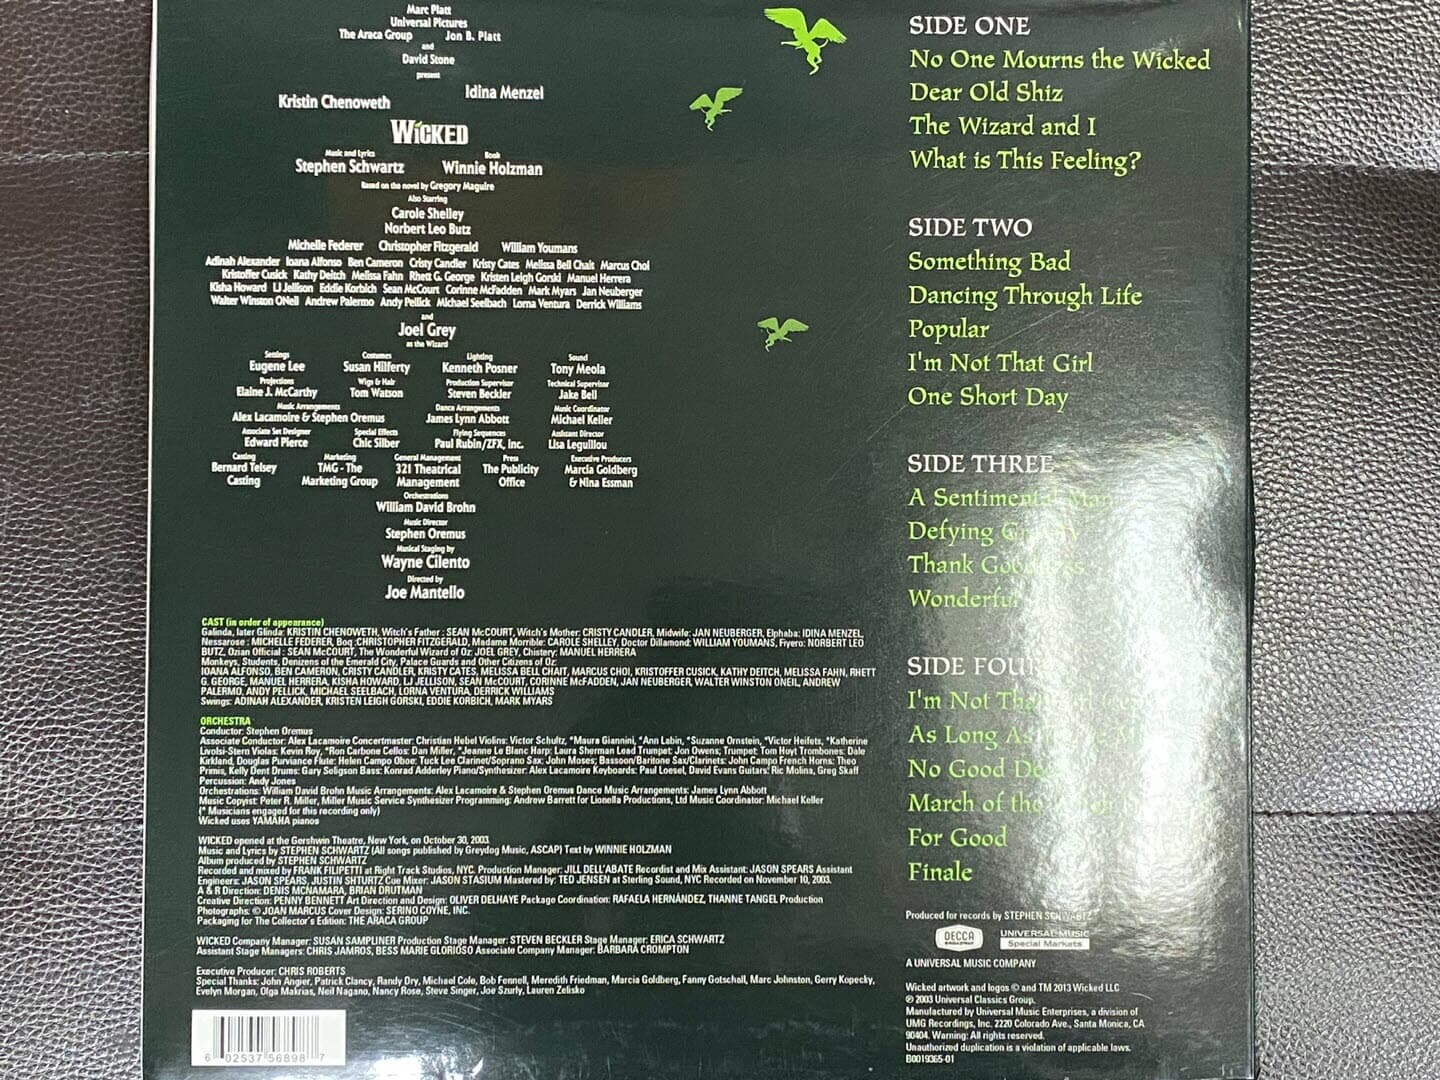 [LP] 스티브 슈왈츠 - Stephen Schwartz - 위키드 (Wiked) Collector`s Edition OST 2Lps [U.S반]